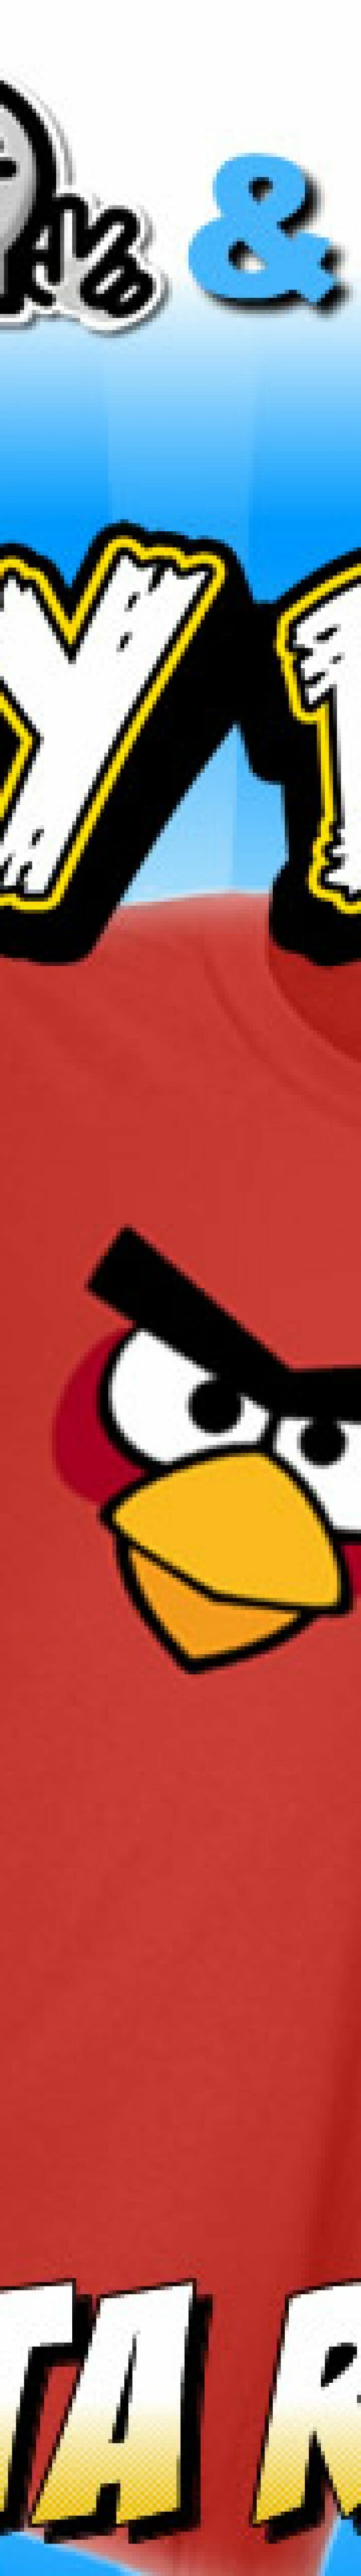 Promoção Angry Birds Parte 4 - Concorra a uma Camiseta do Red Bird!